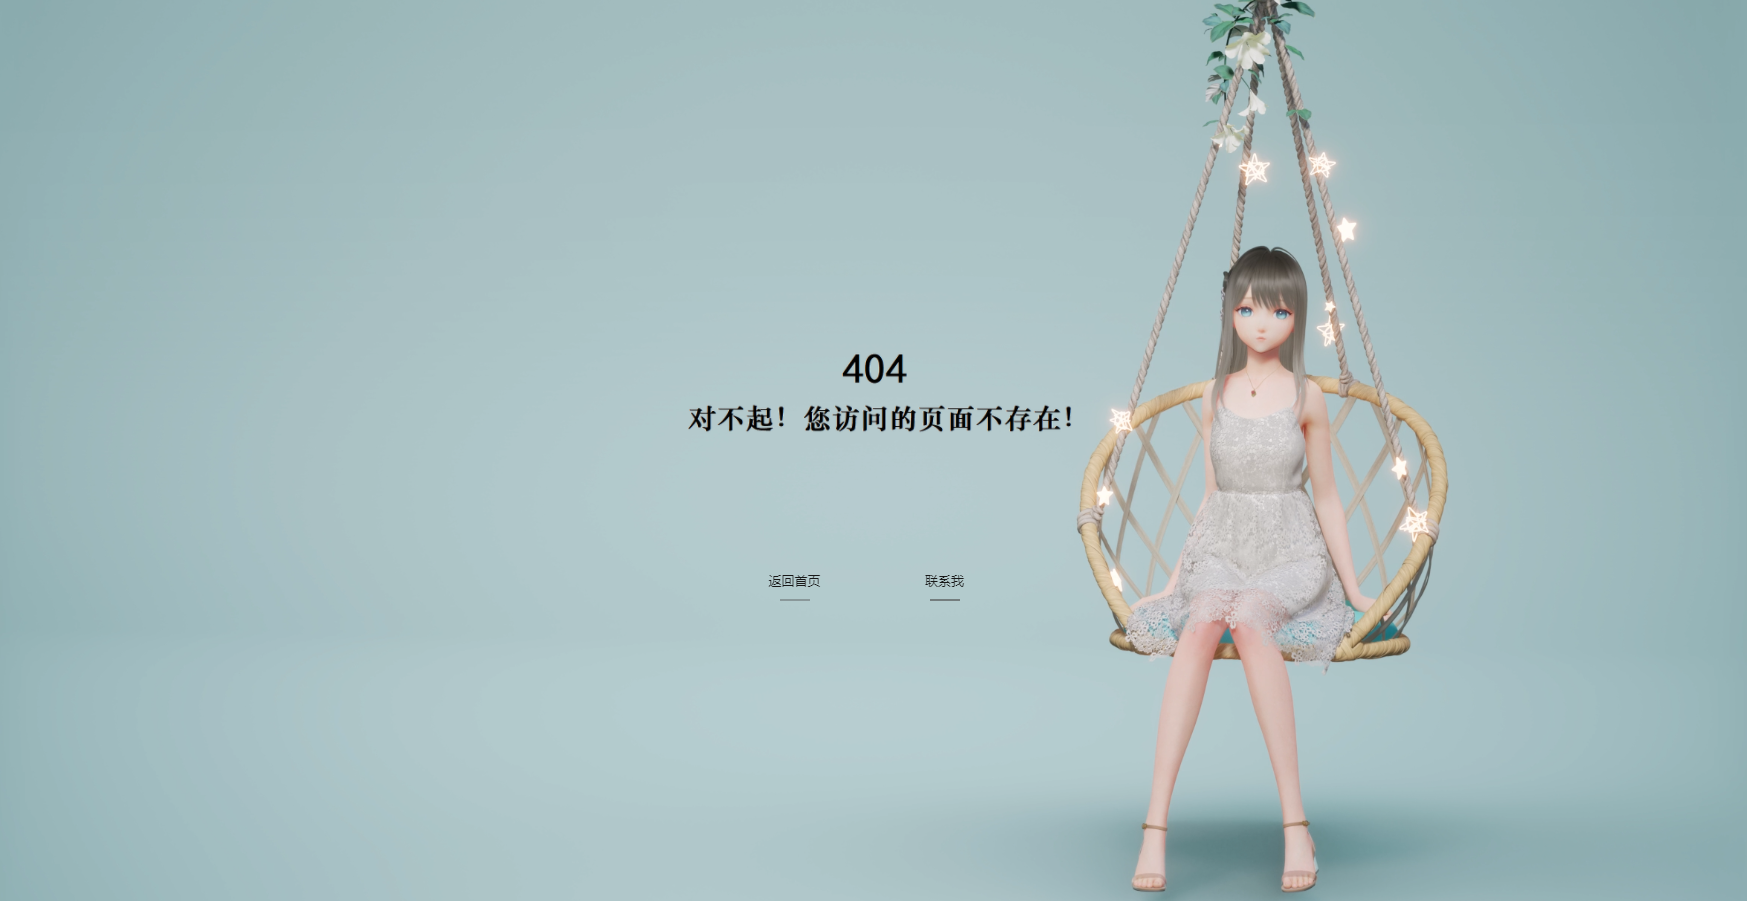 唯美动态个人404单页HTML源码 程序源码 图2张